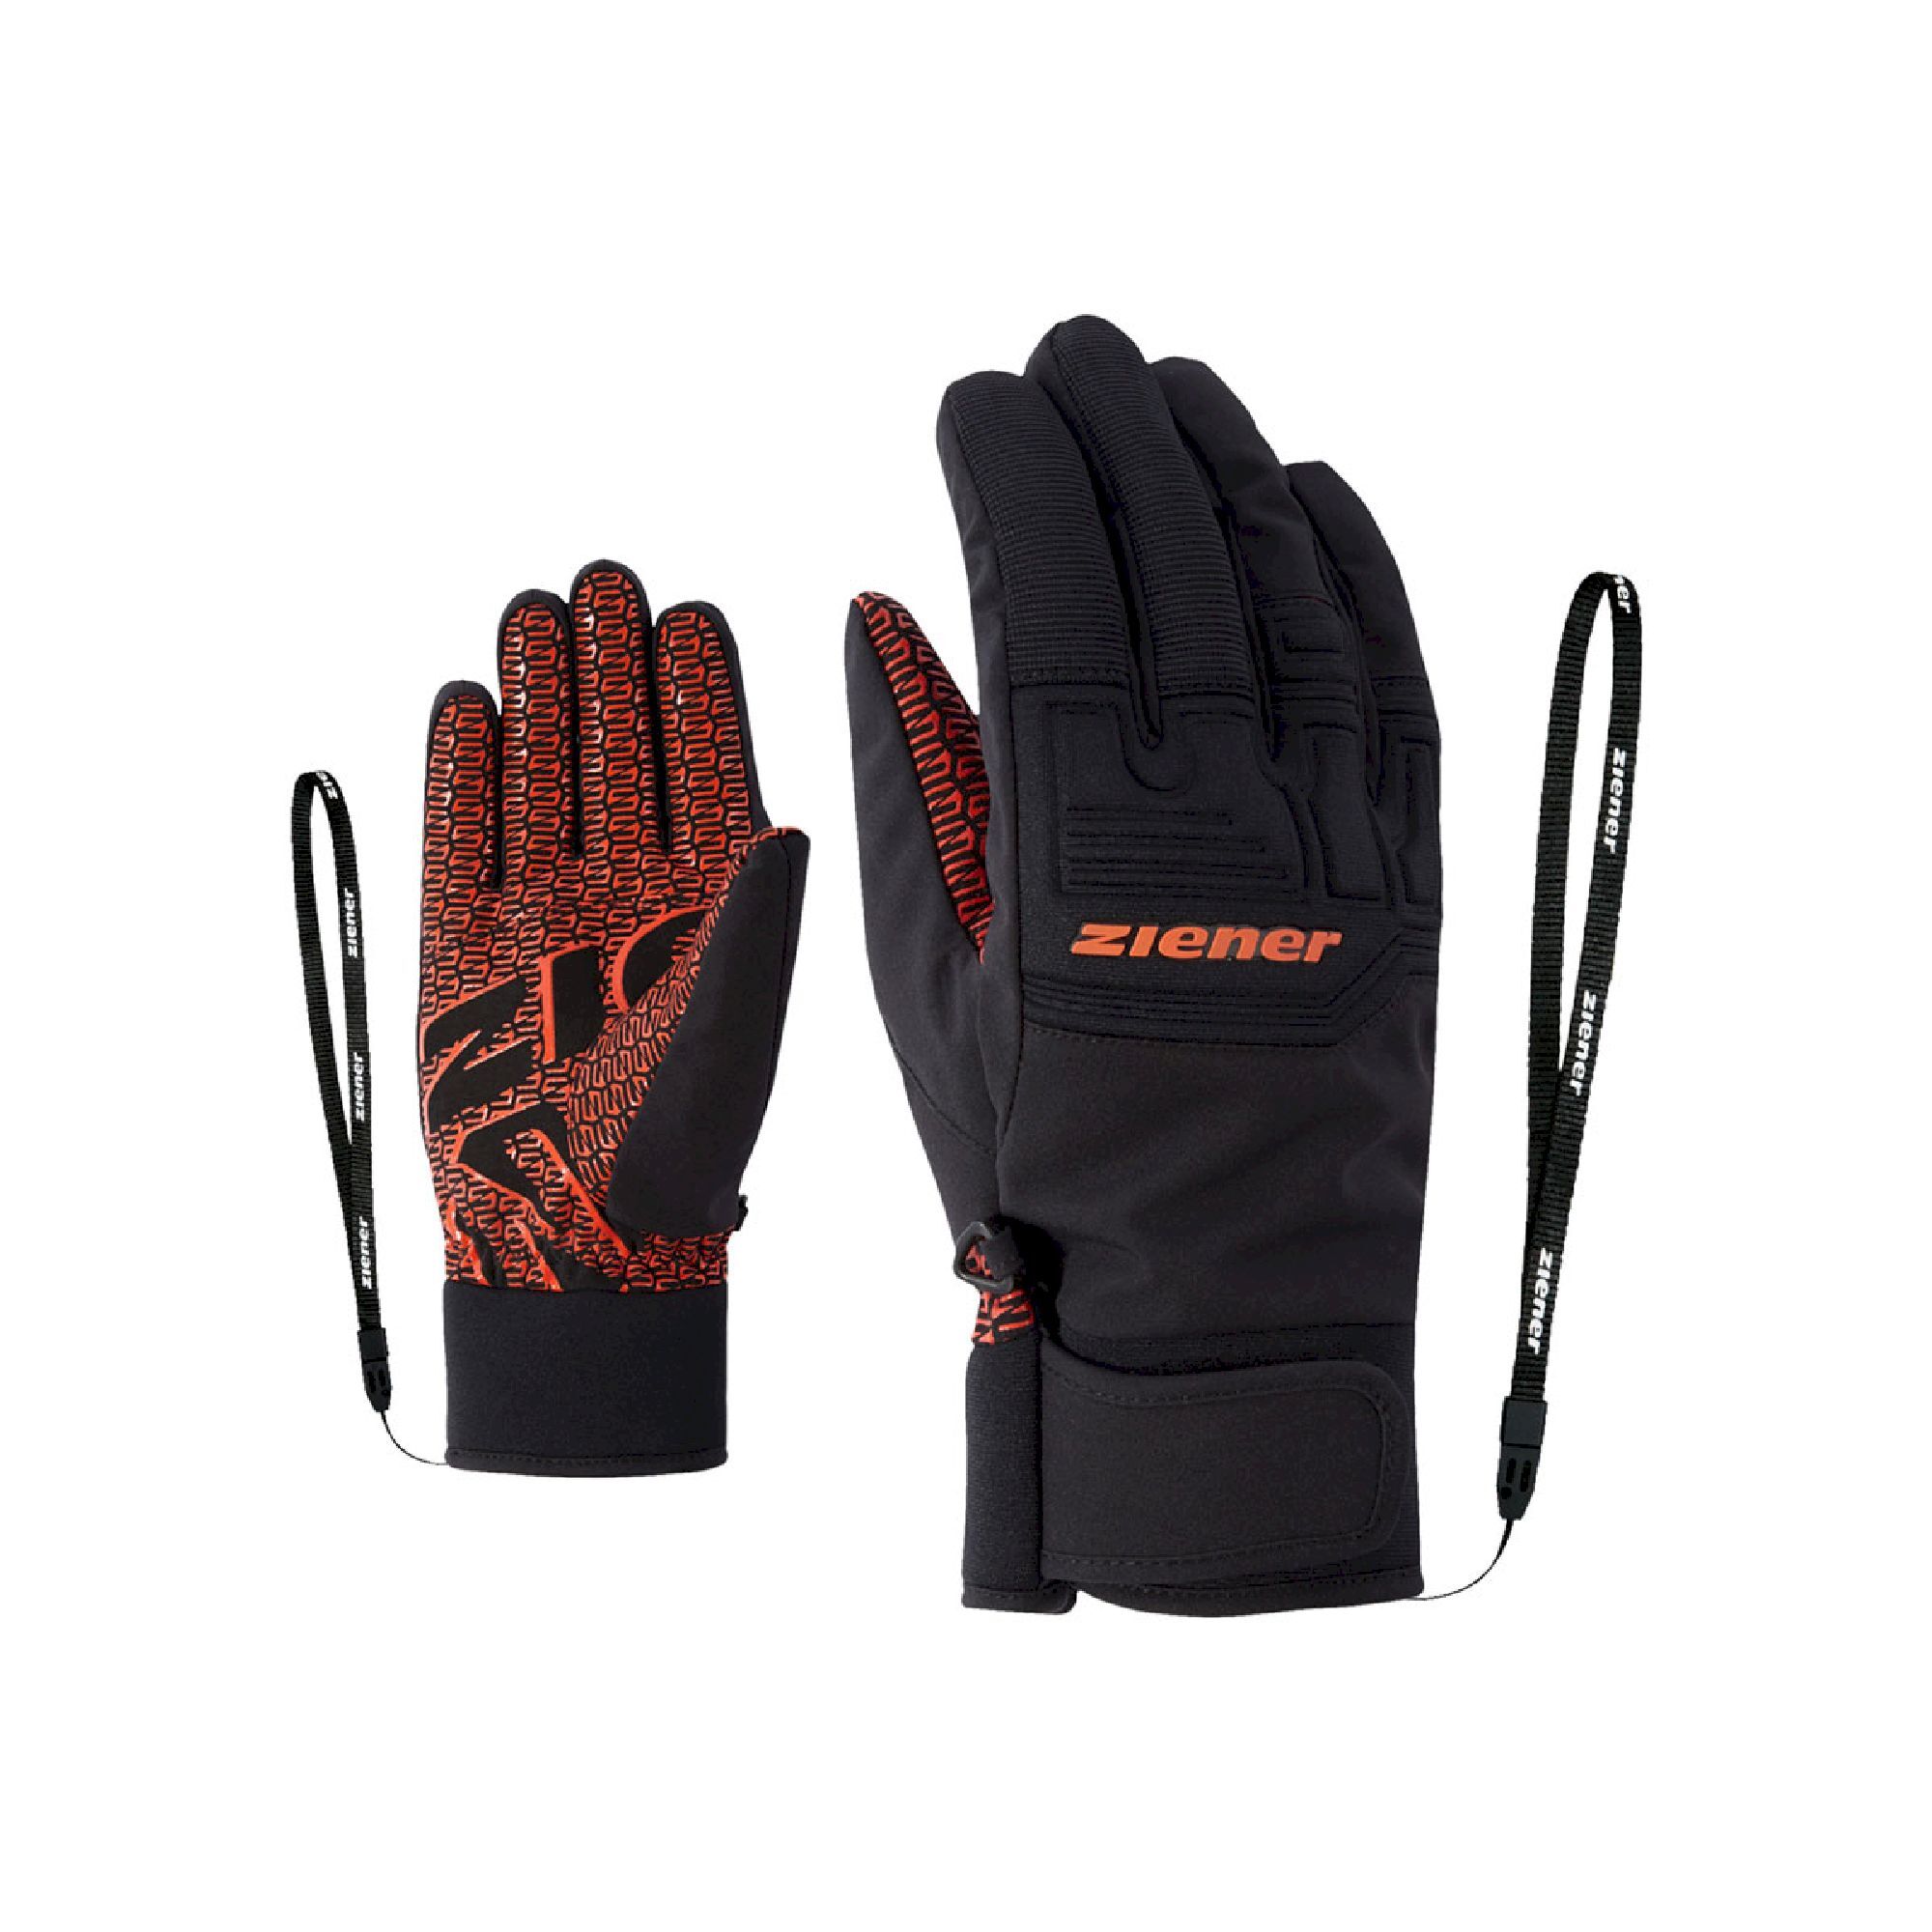 Ziener Garim AS - Ski gloves